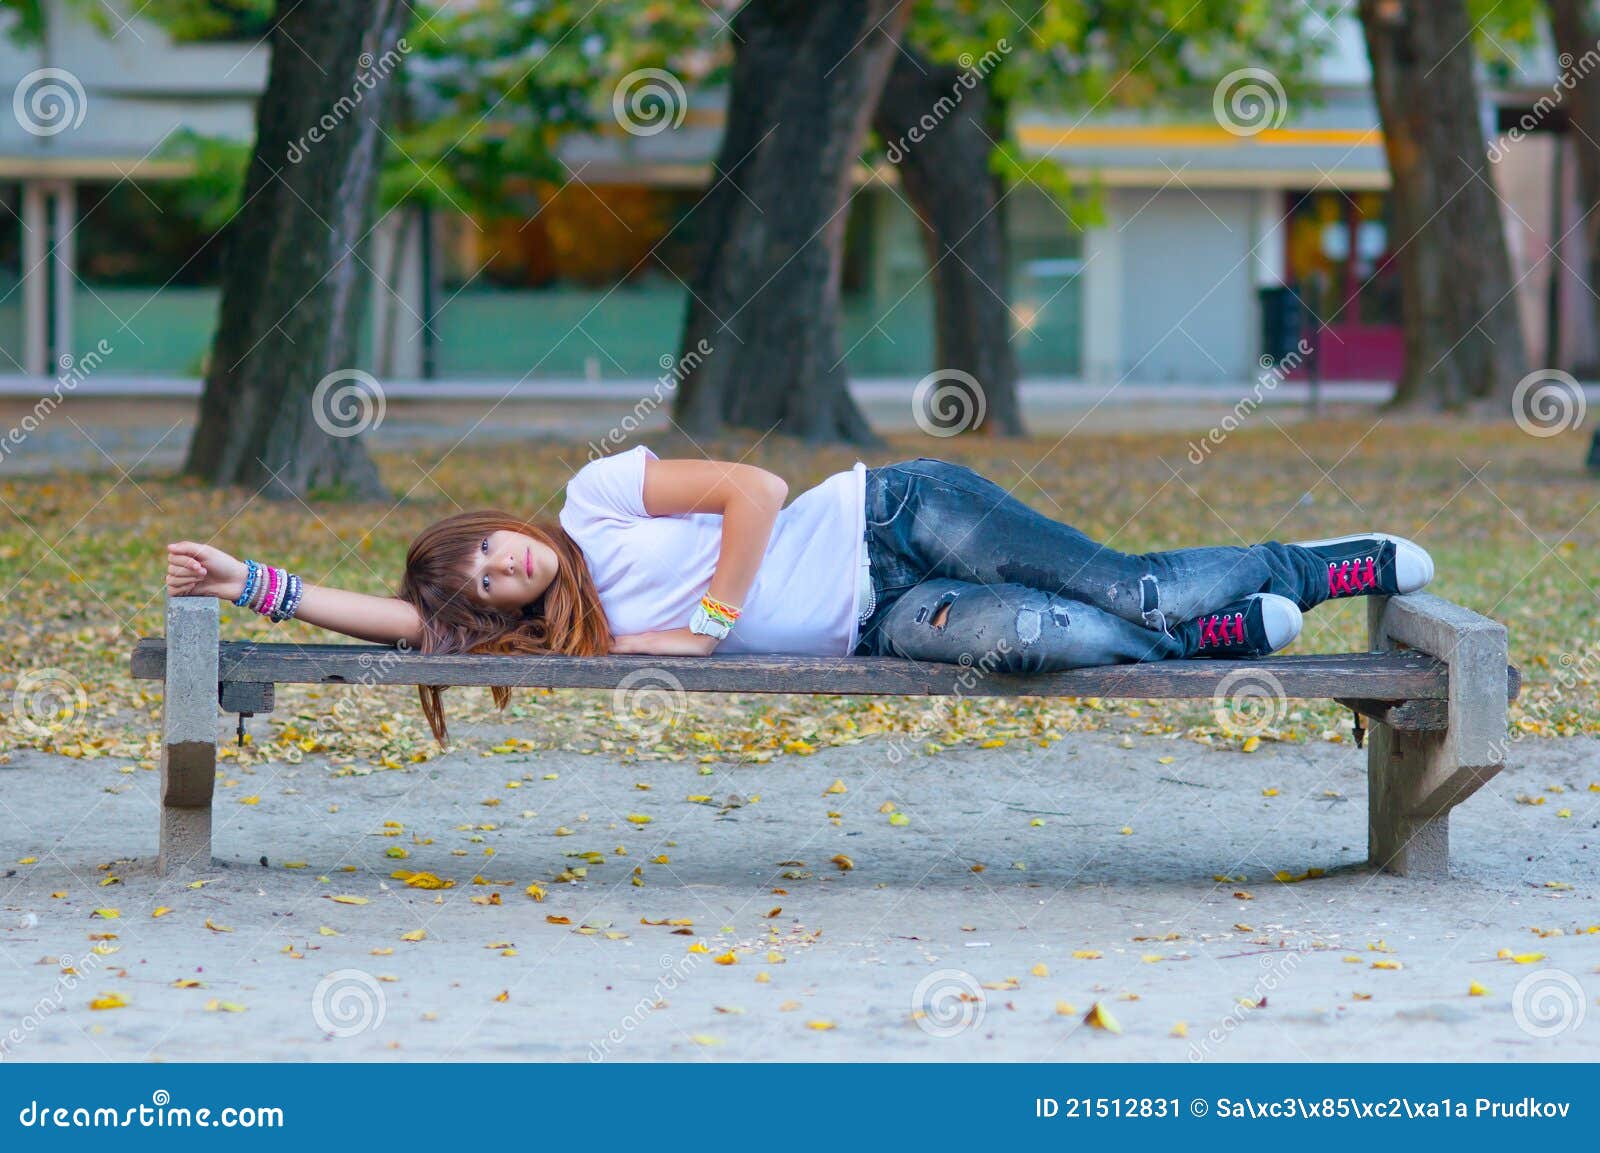 Пьяные девки на улицах. Девушка валяется на улице. Девушка лежит на скамейке. Пьяные женщины на скамейке.